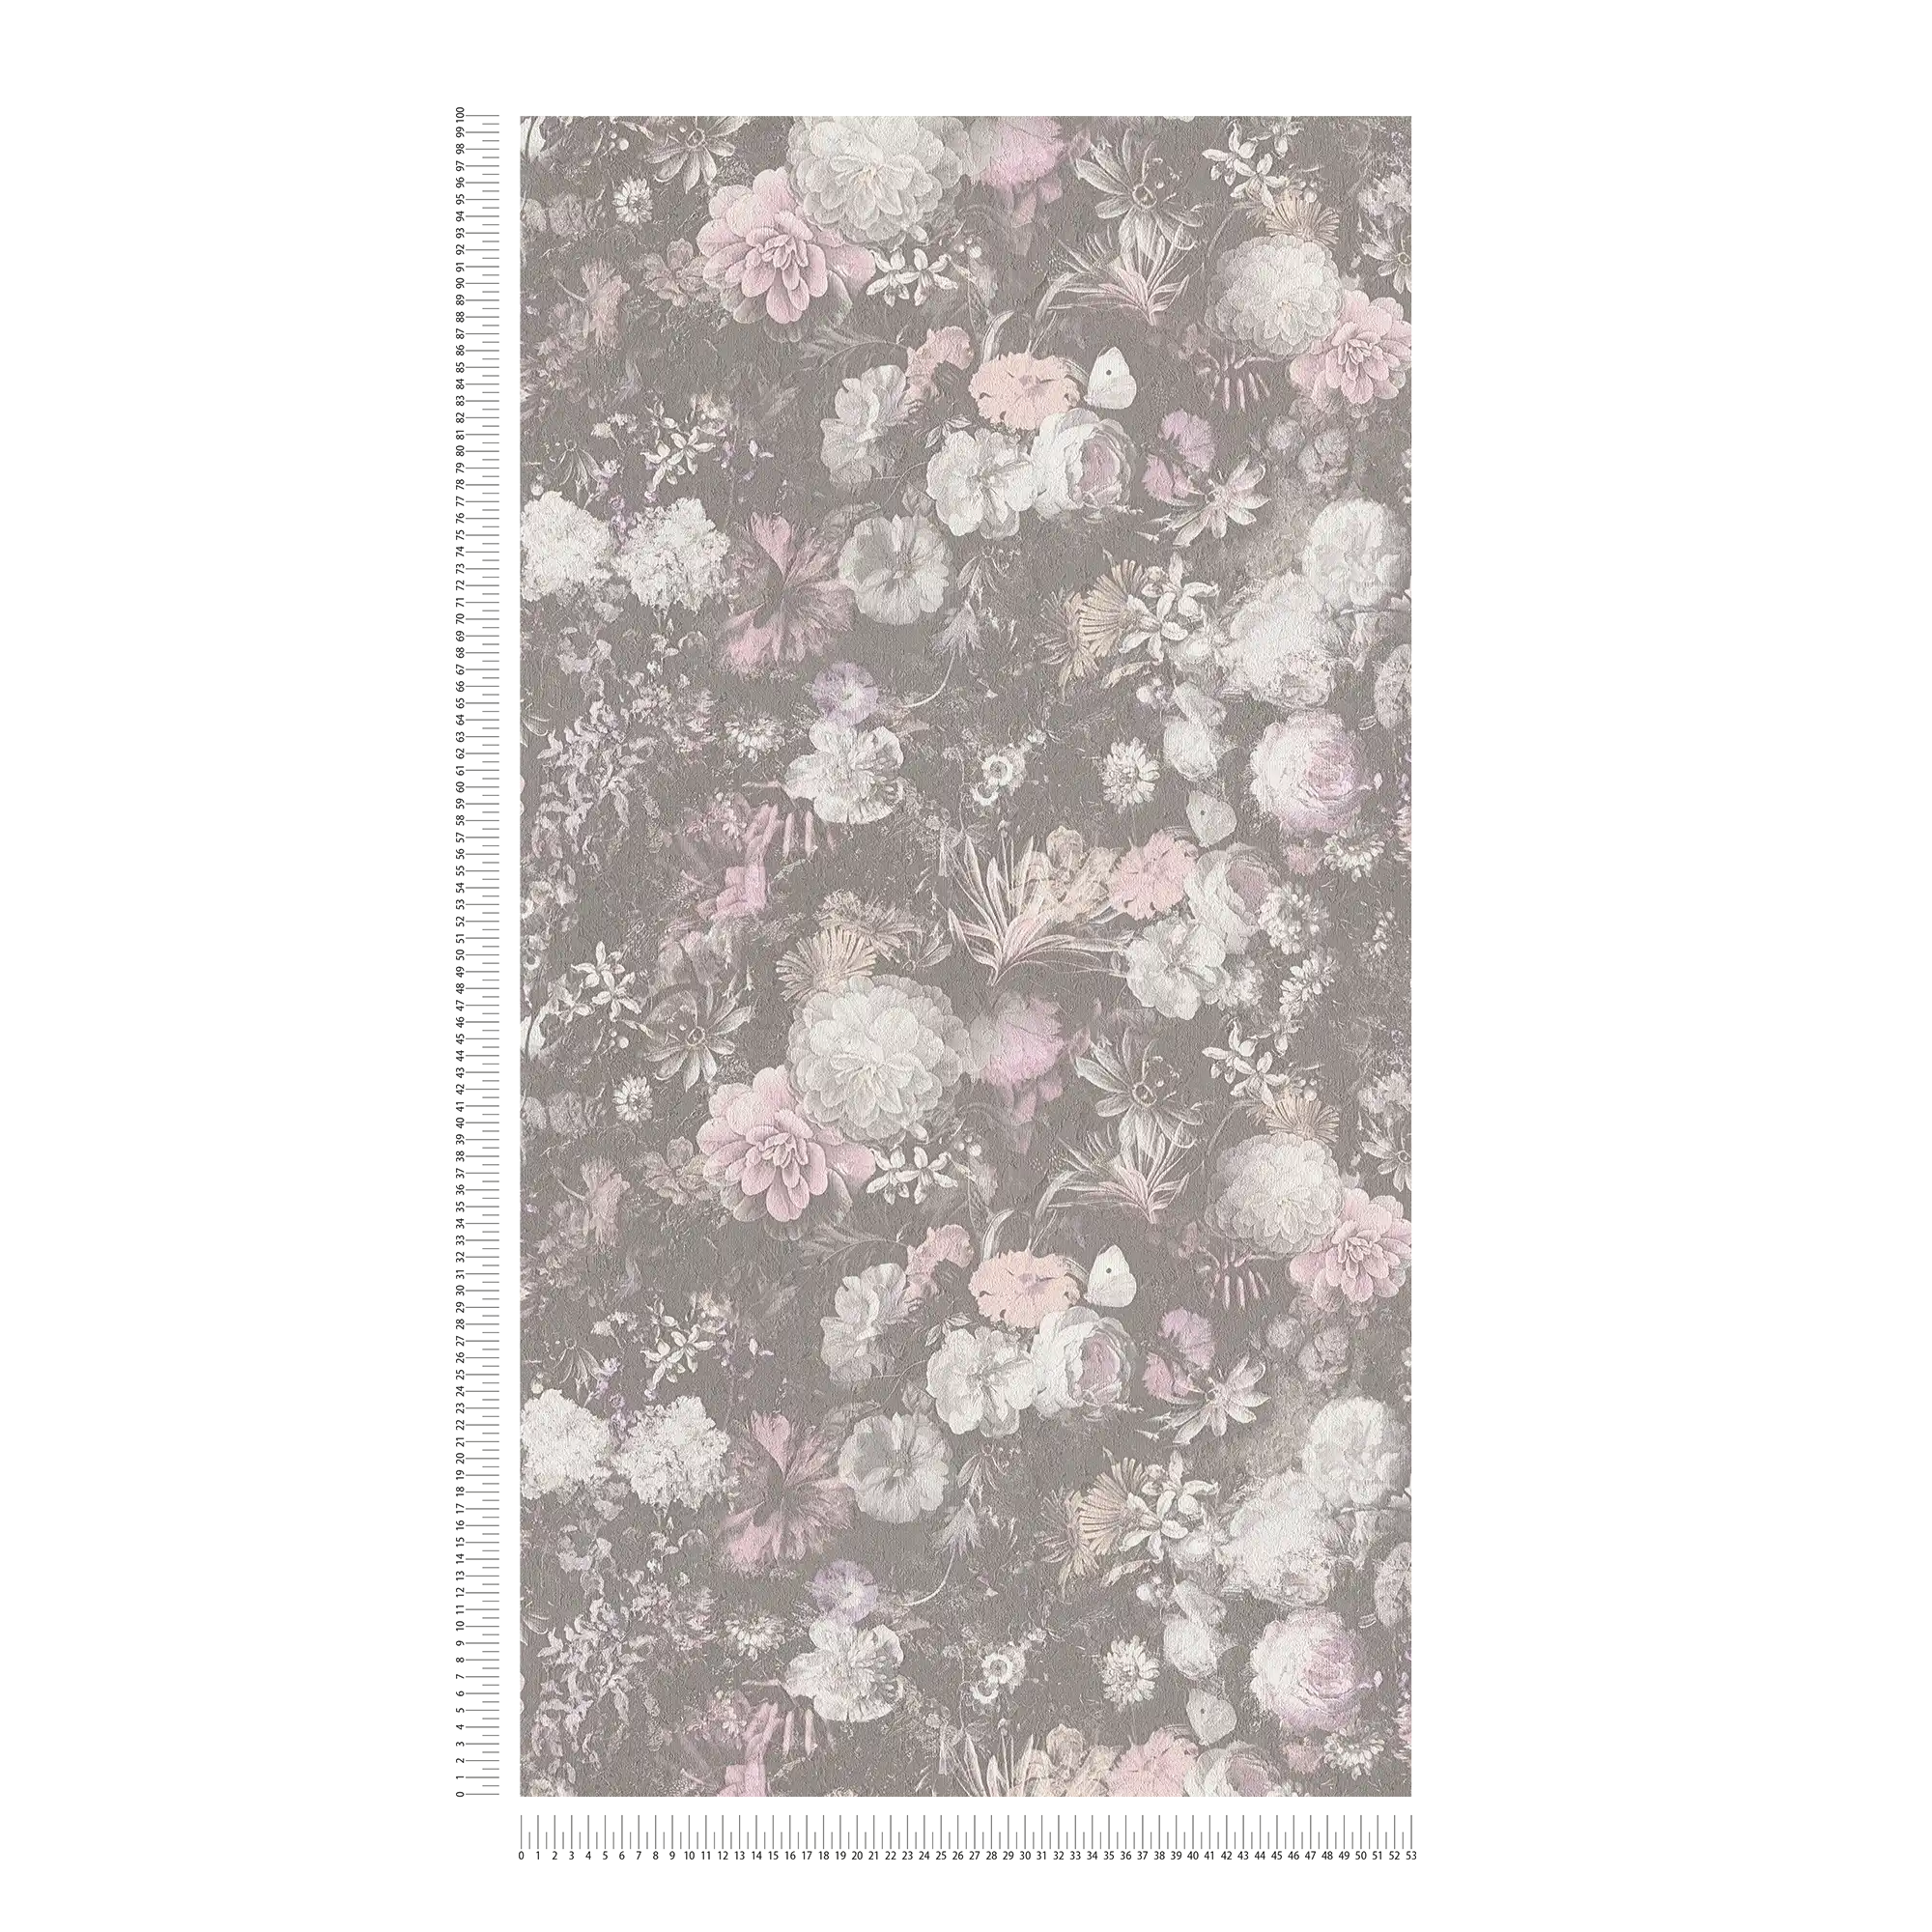             Floral wallpaper pink & grey in vintage design
        